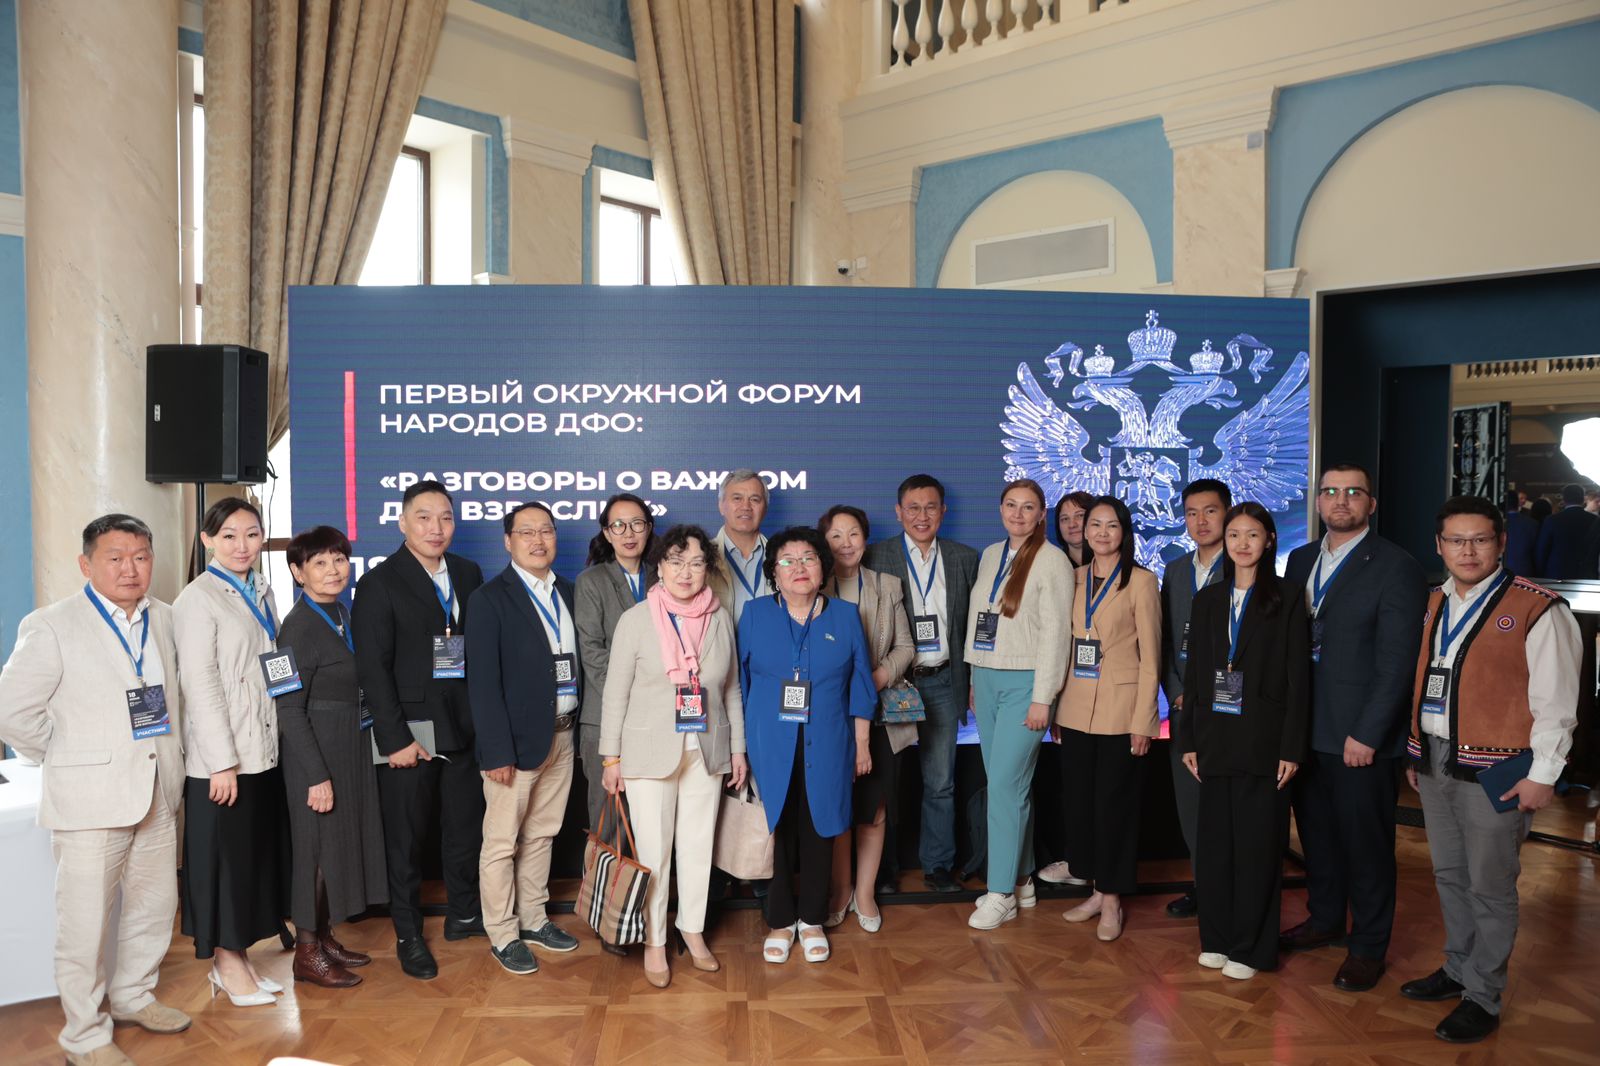 Якутяне принимают участие в первом окружном форуме народов ДФО